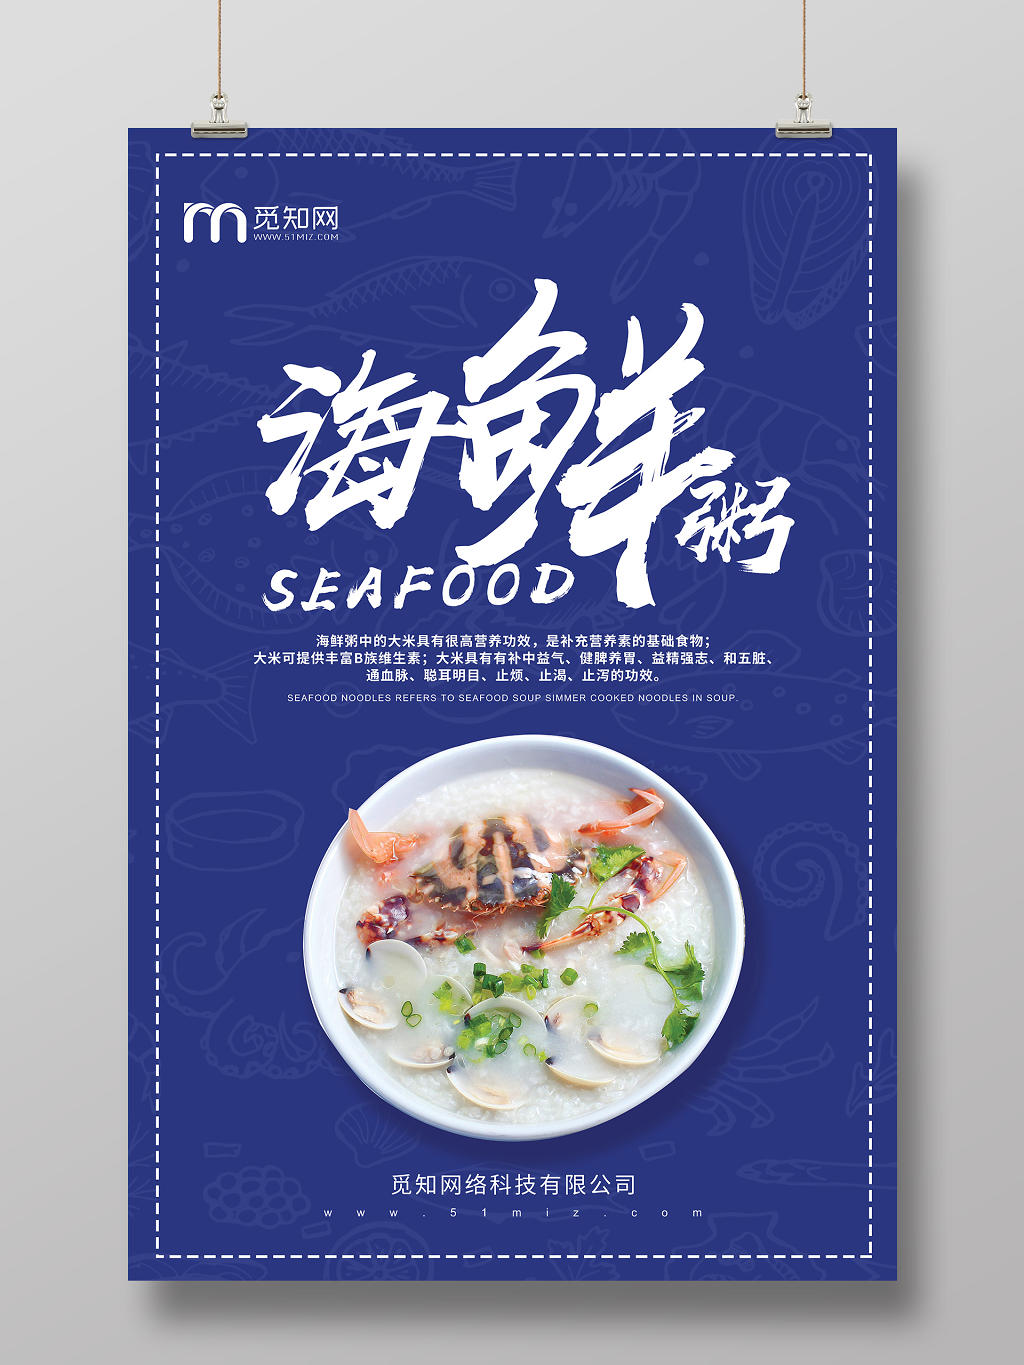 蓝色纯色背景海鲜粥海鲜饭美食潮汕砂锅粥海报宣传促销